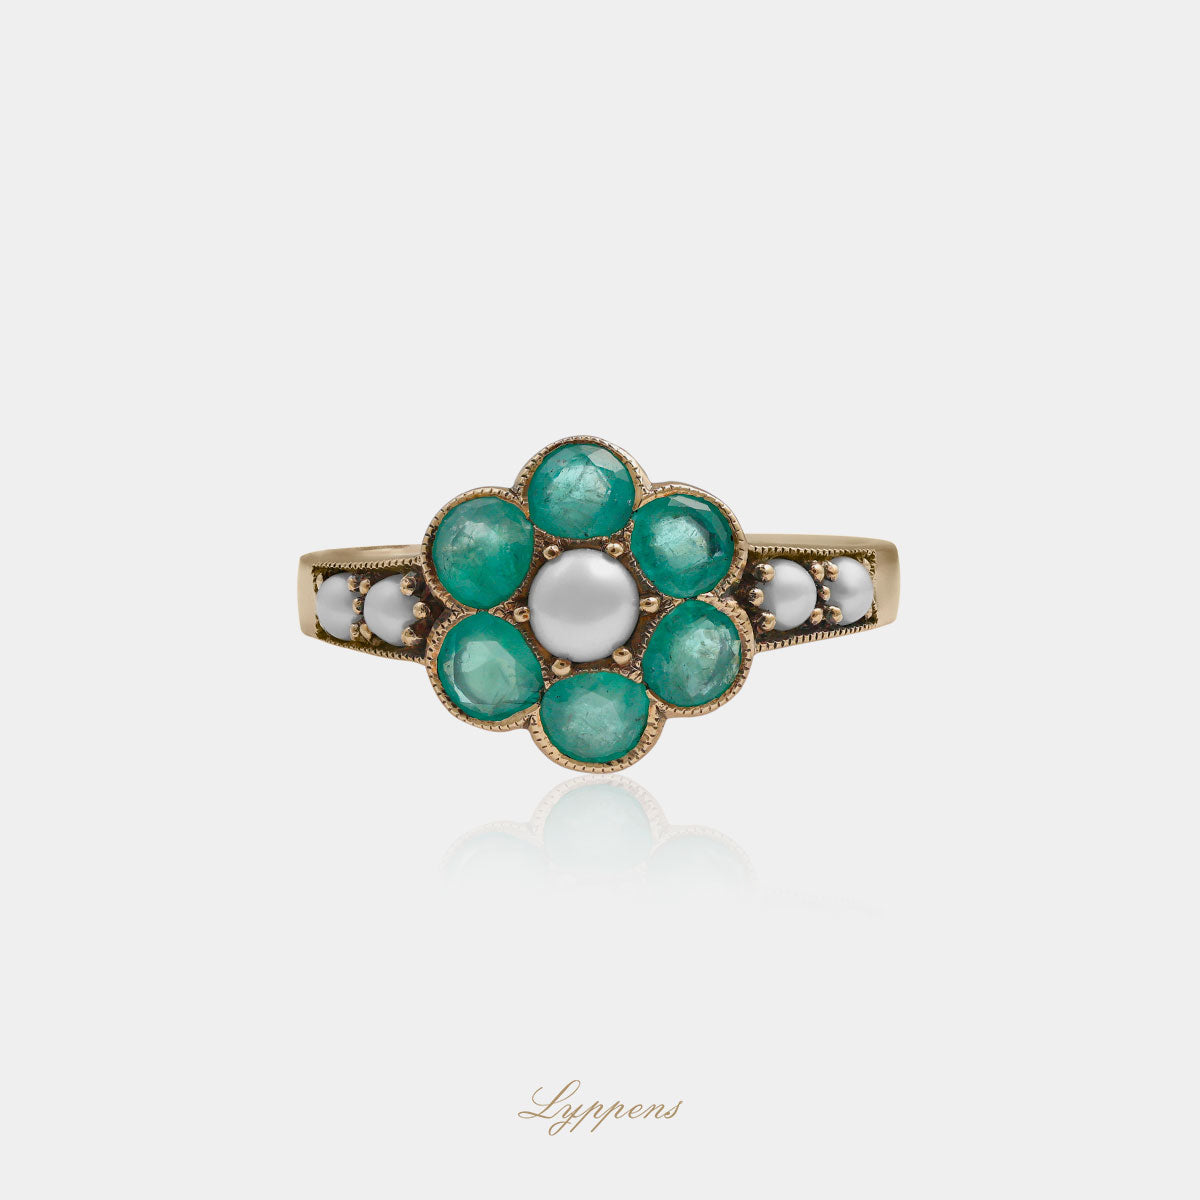 Geelgouden vintage stijl ring gezet met smaragd en parel.